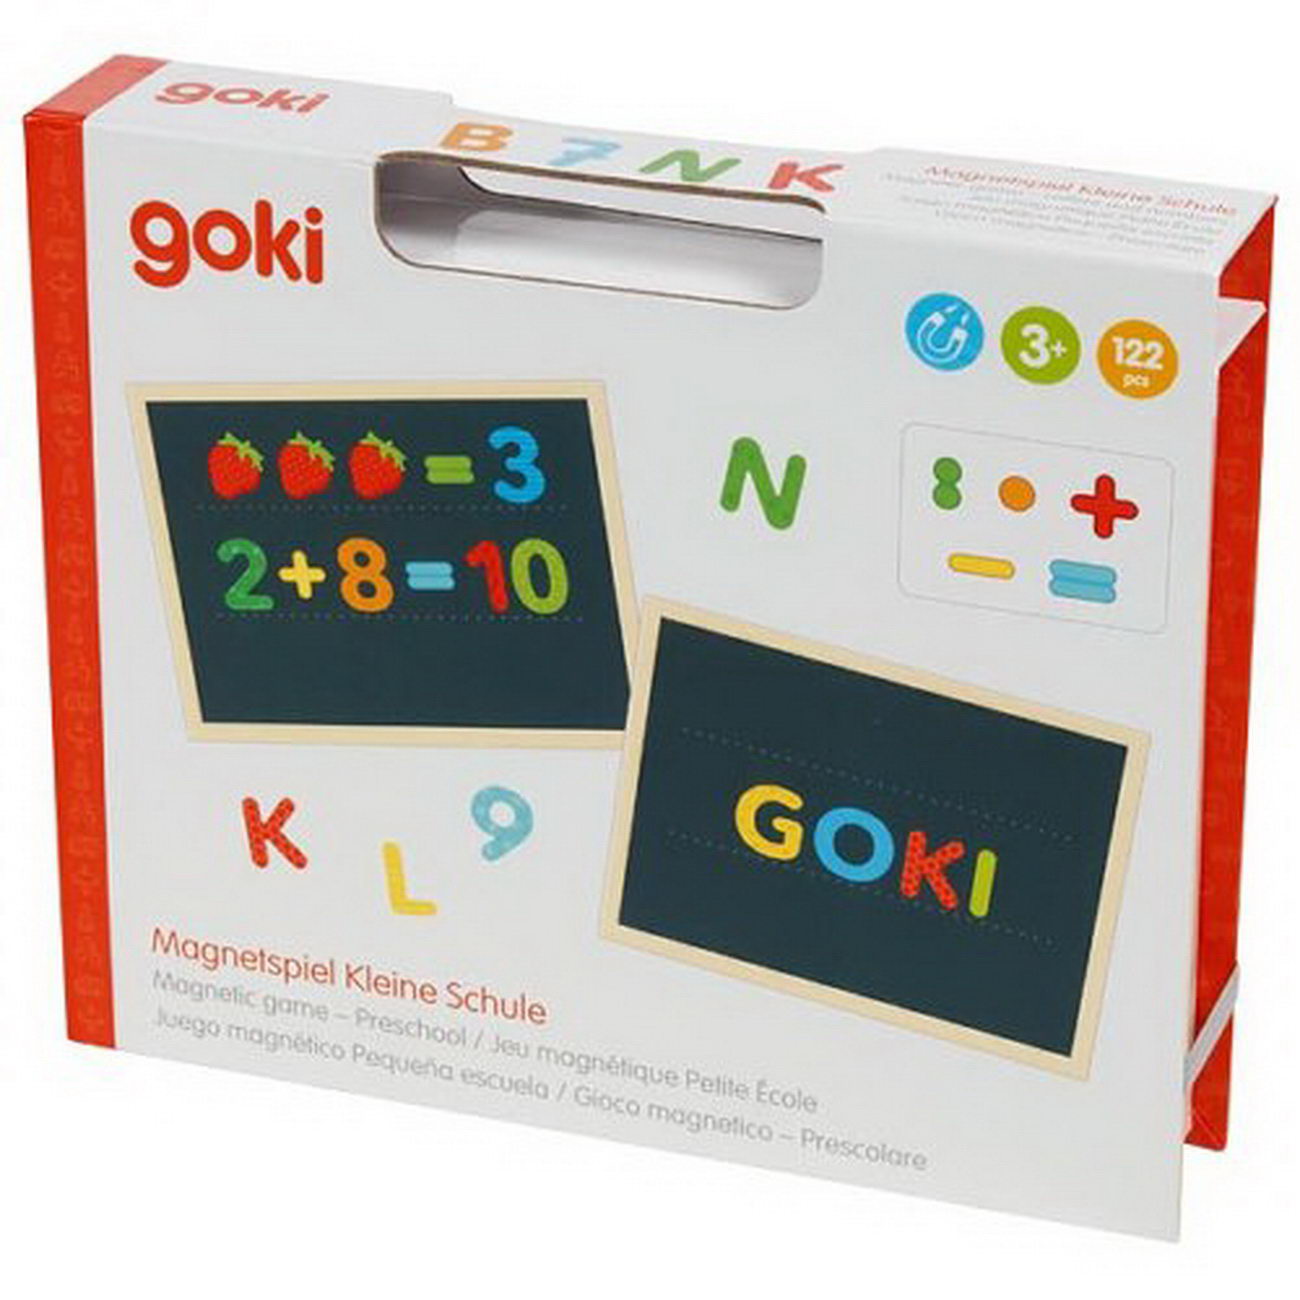 Magnetspiel Kleine Schule (goki 58420)